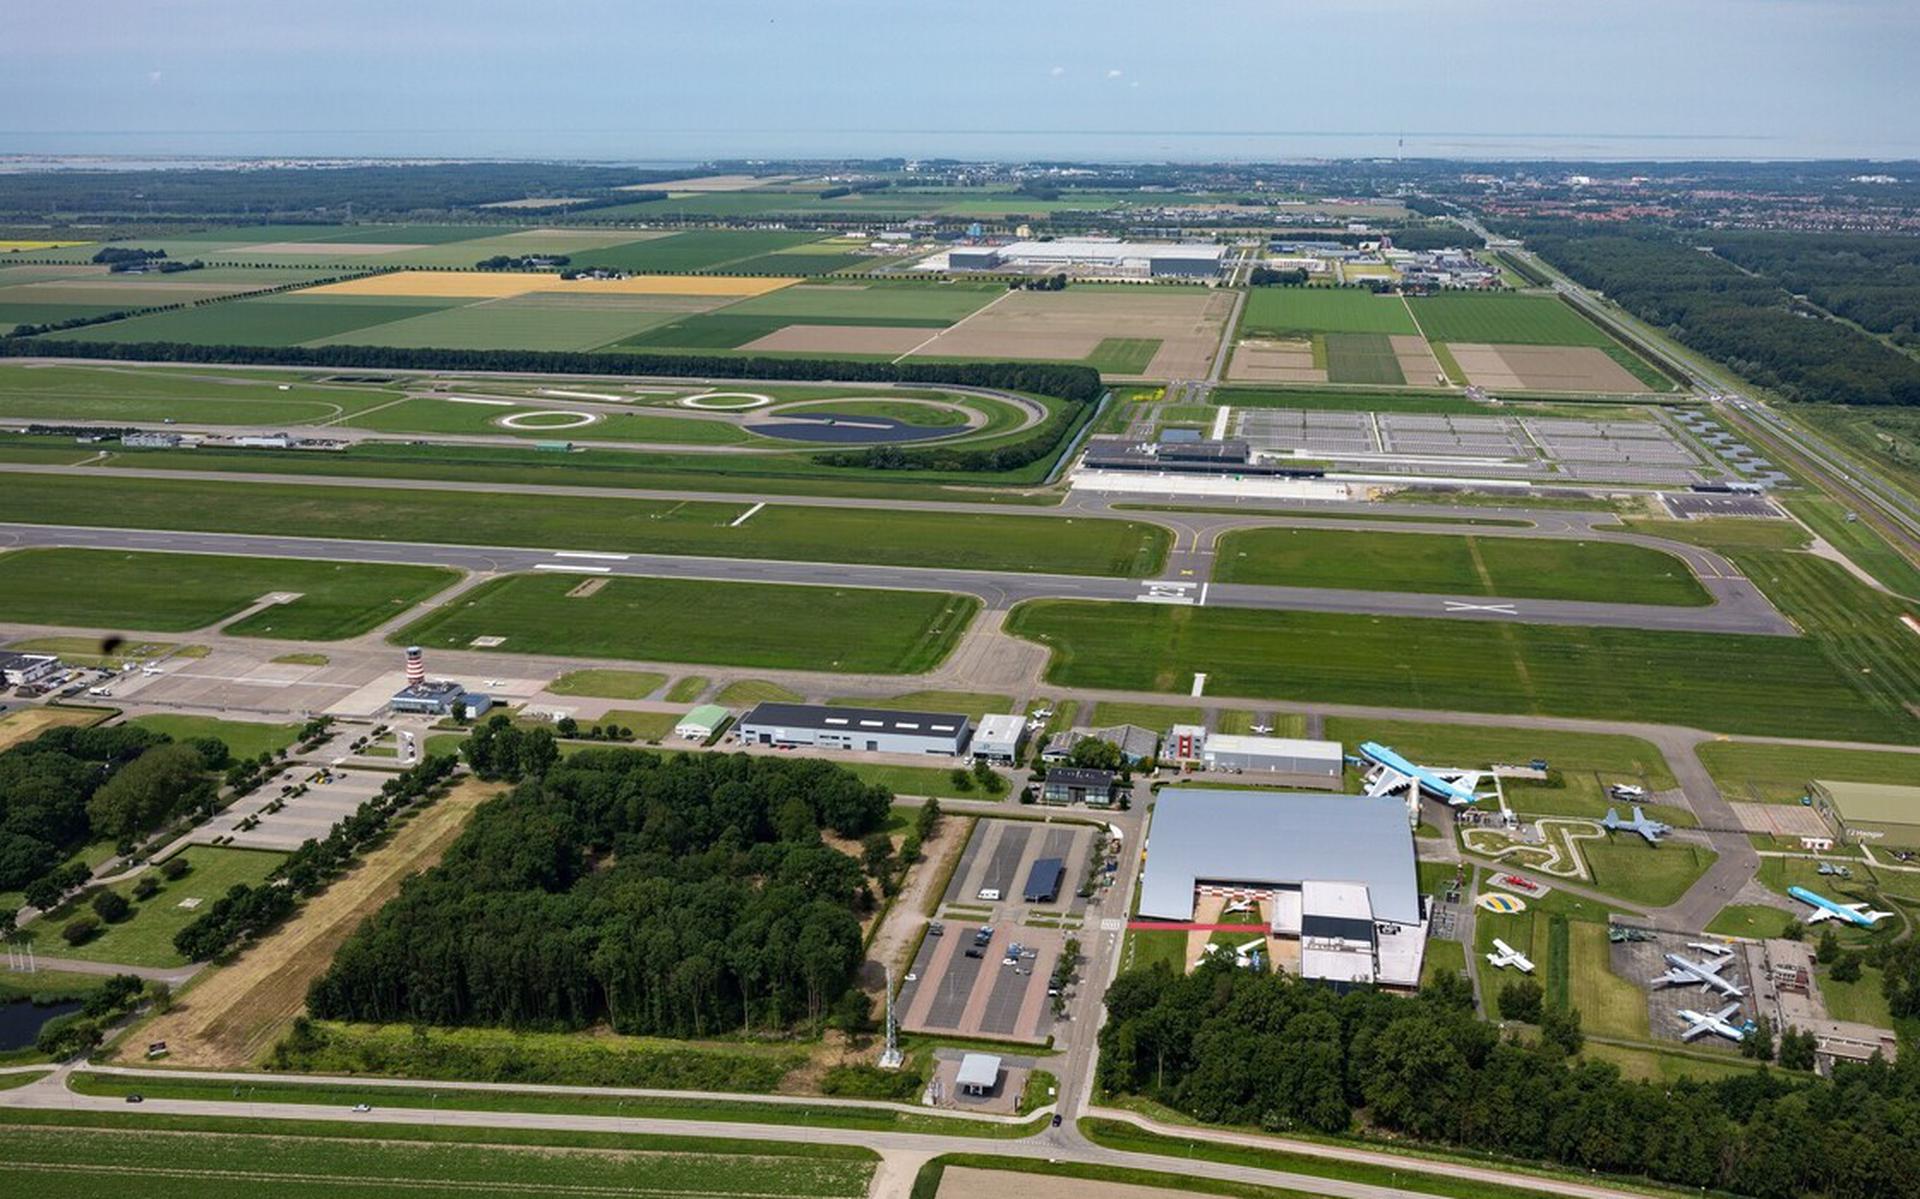 De motie is een reactie op het bericht dat de Schiphol Groep onlangs een aantal boerenbedrijven op de Veluwe heeft opgekocht om daarmee de benodigde natuurvergunning voor Lelystad Airport te kunnen krijgen. 